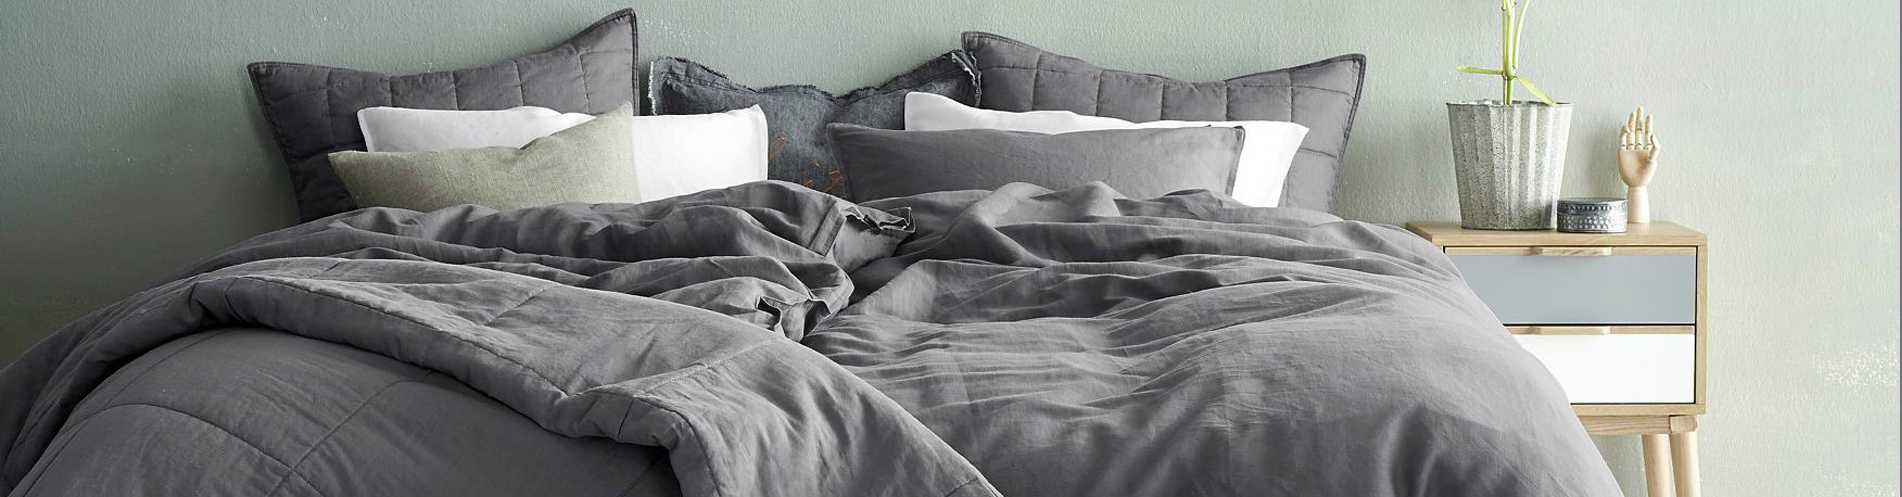 Как часто нужно менять постельное белье дома, от чего это зависит и в чем опасность несвоевременной замены